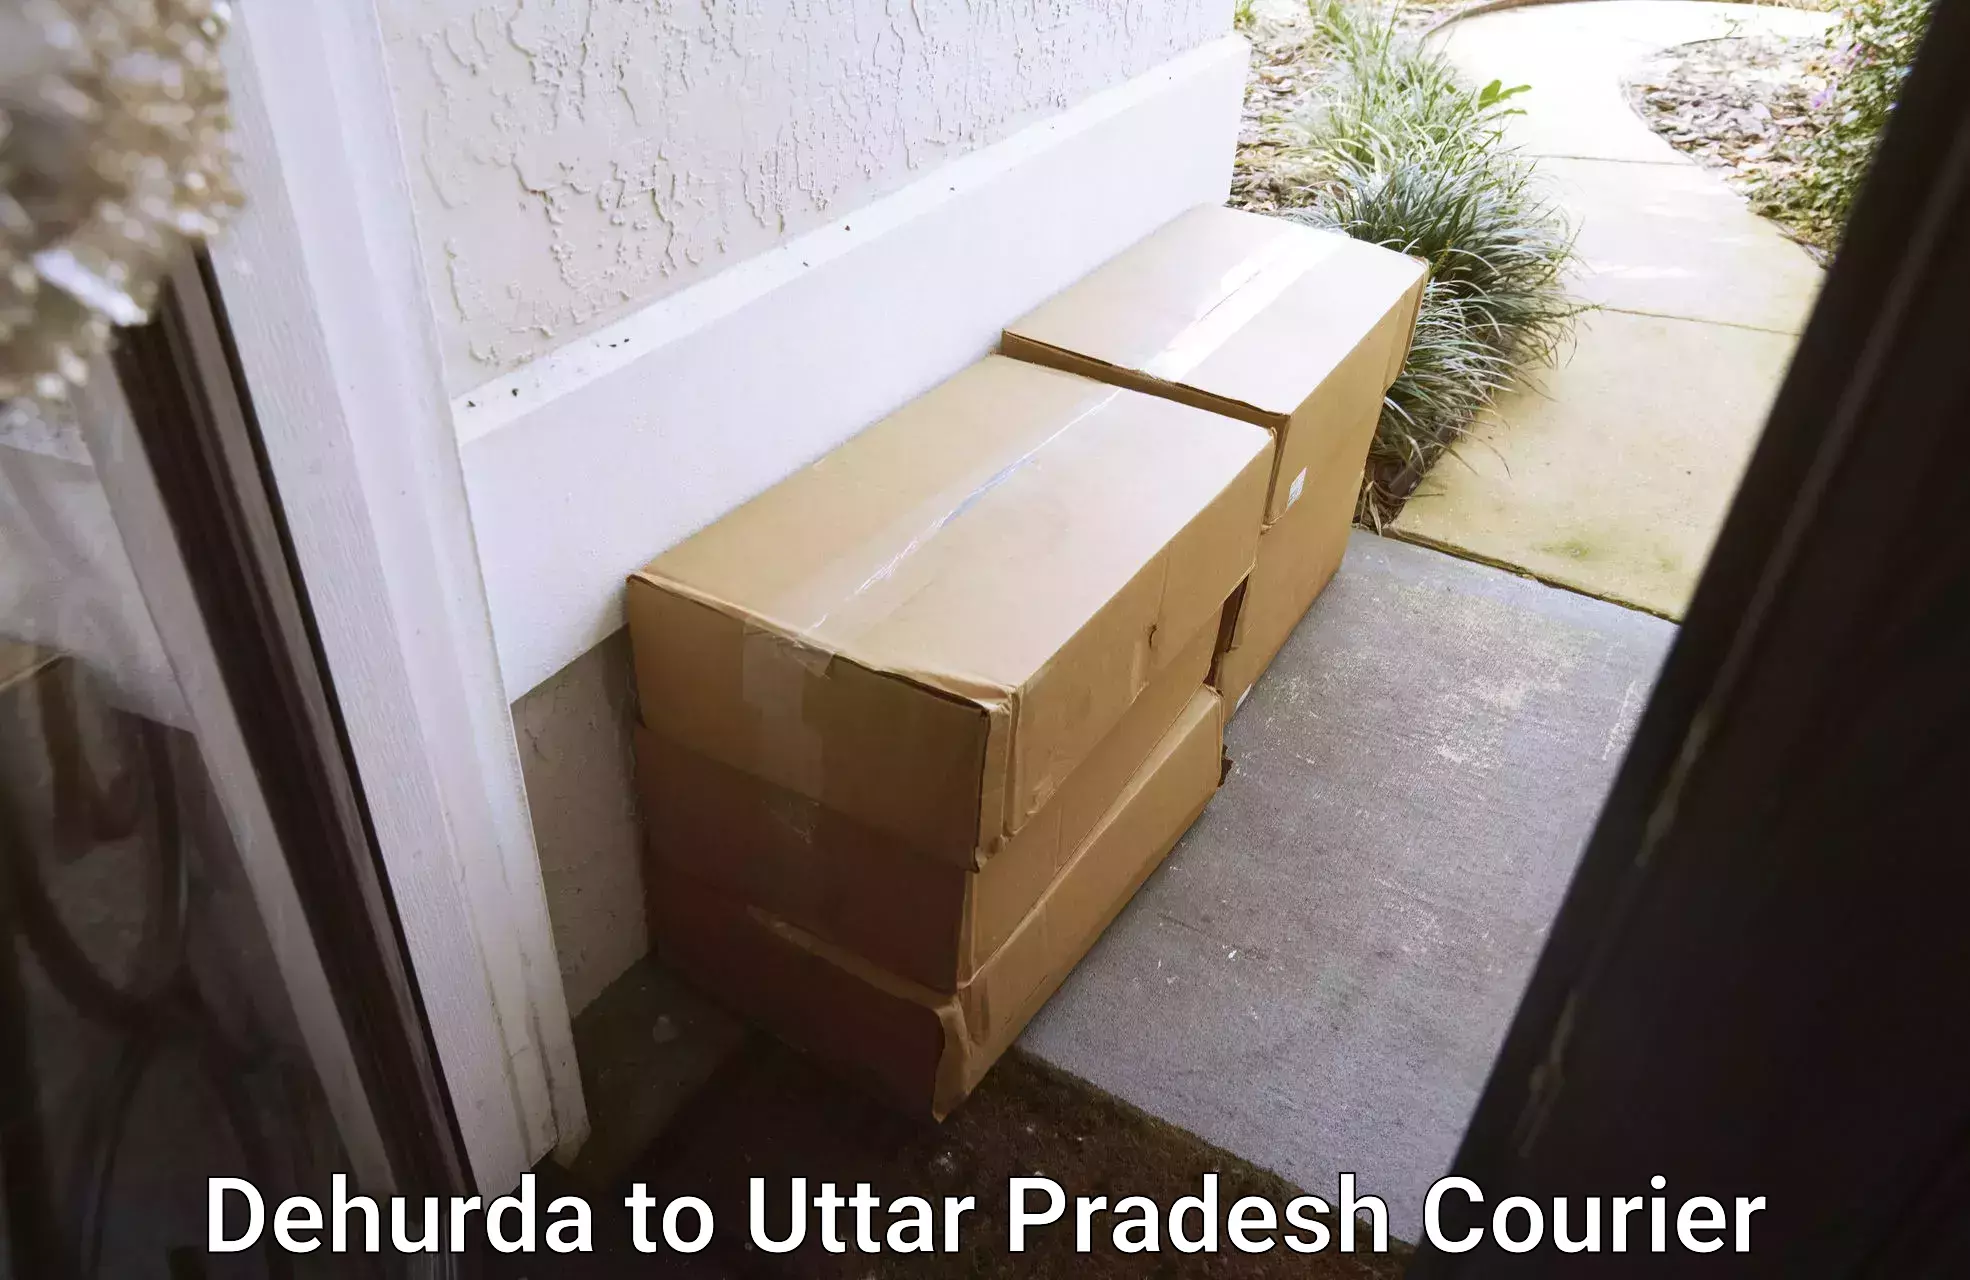 24-hour courier services in Dehurda to Gajraula